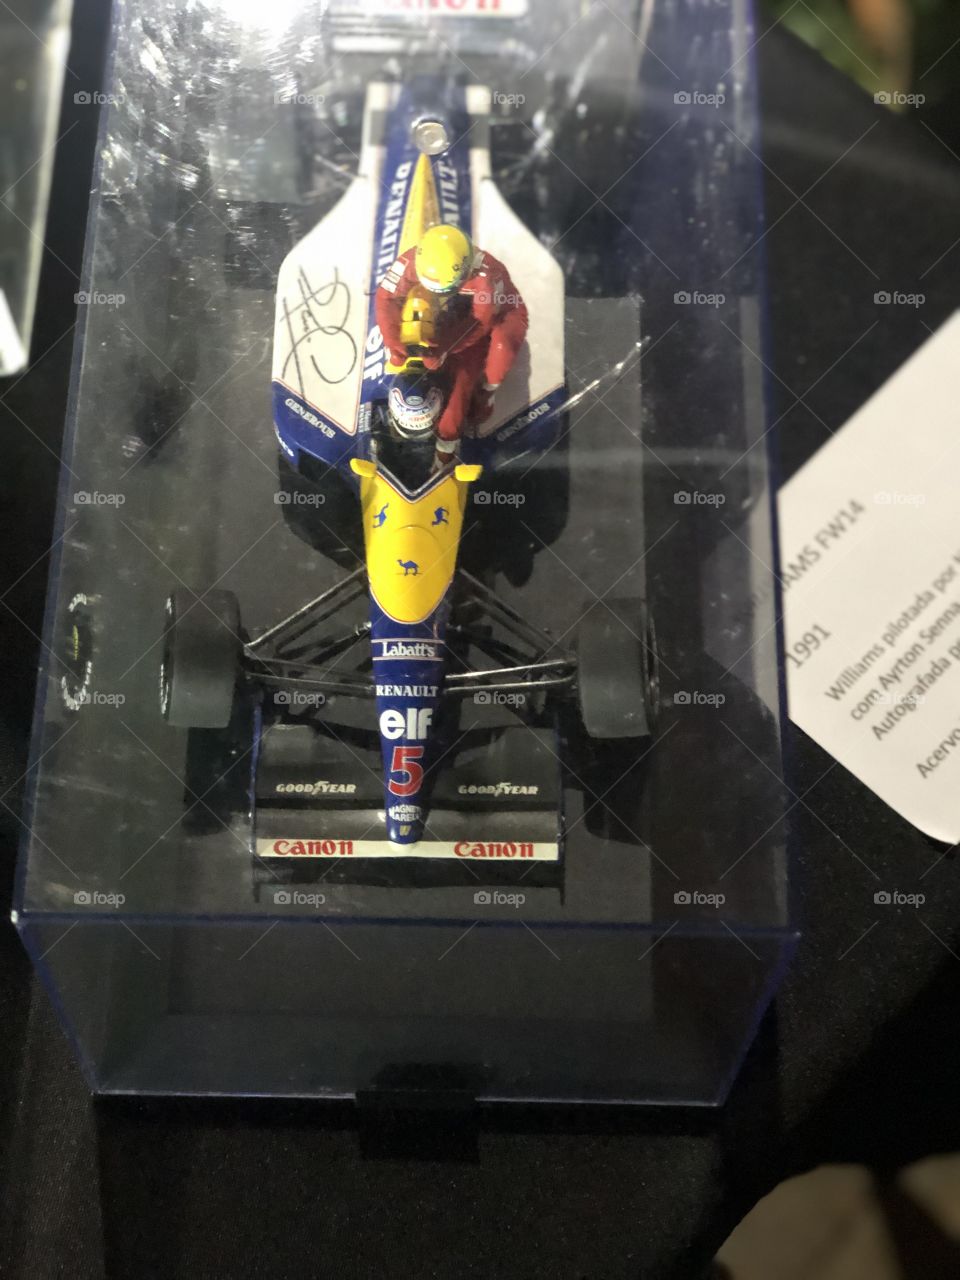 Miniatura do carro de fórmula 1 dirigido por Senna.